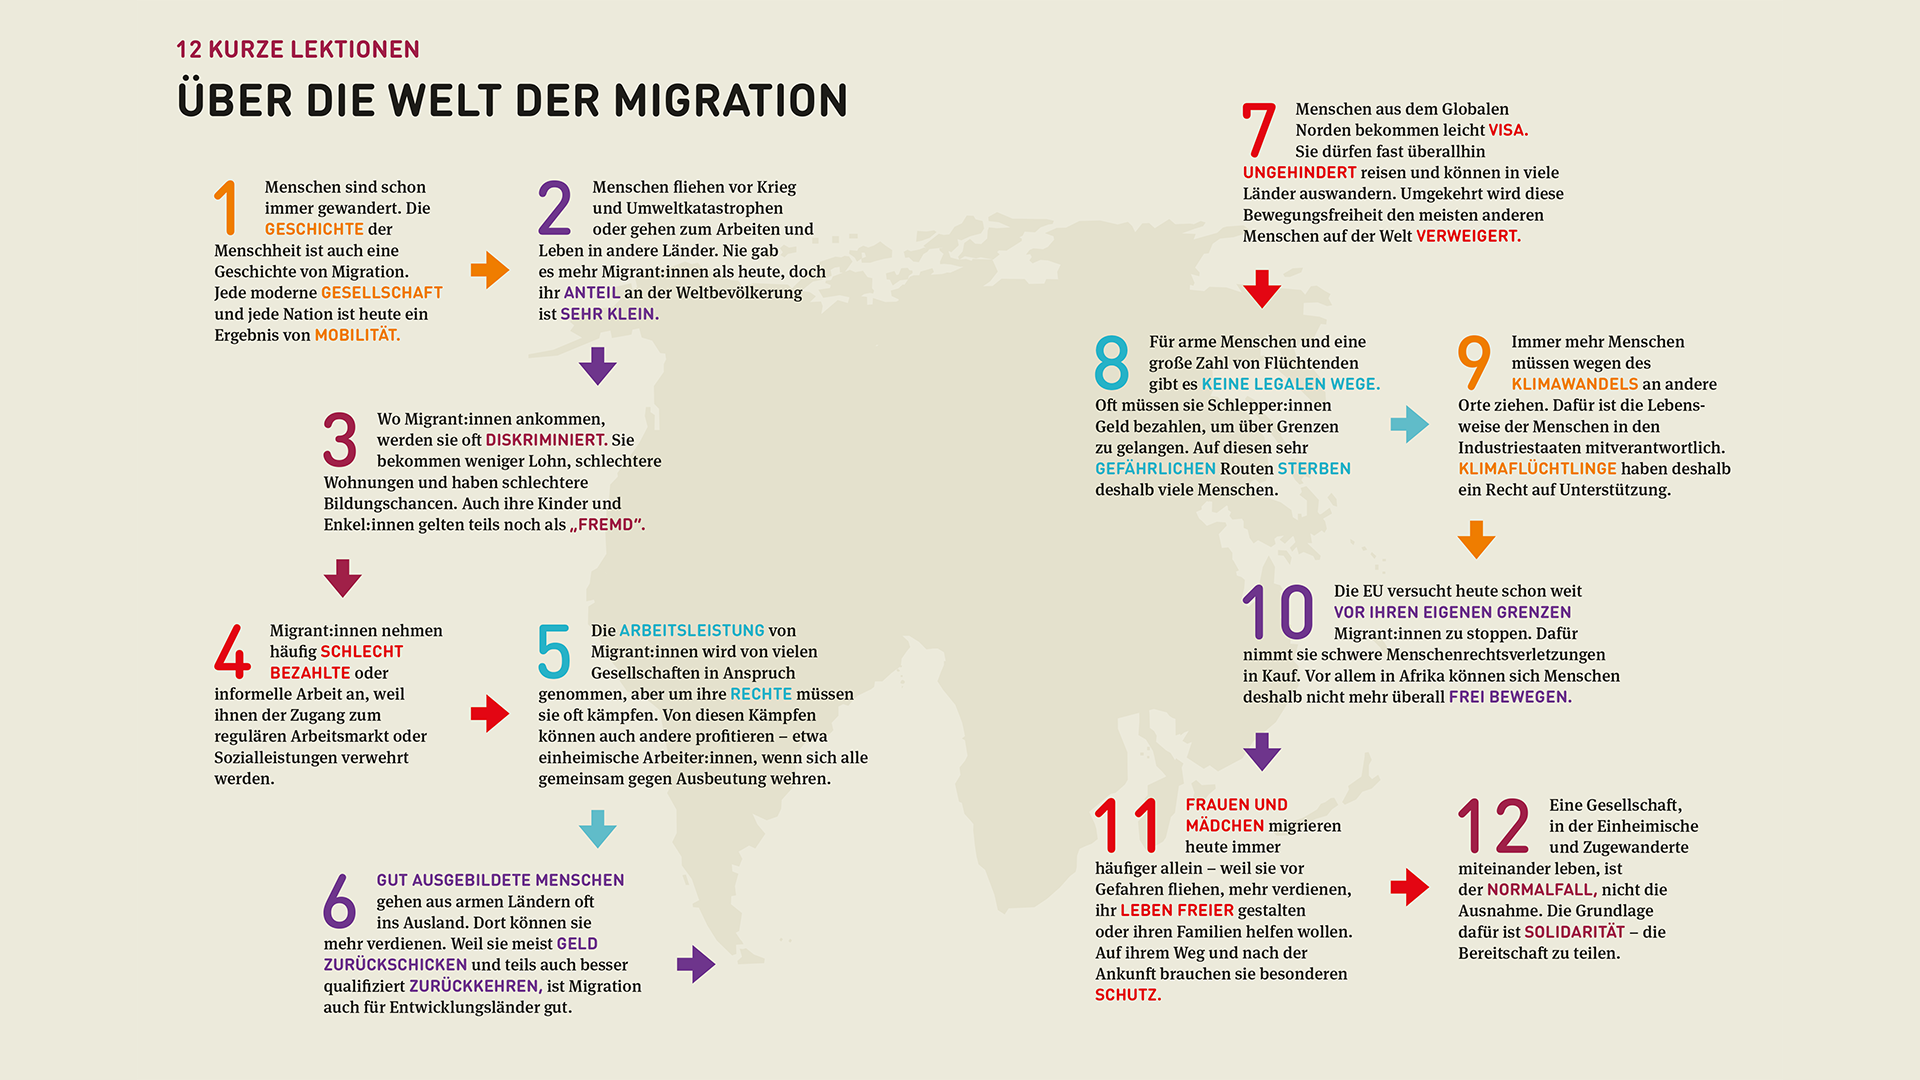 12 kurze Lektionen über die Welt der Migration